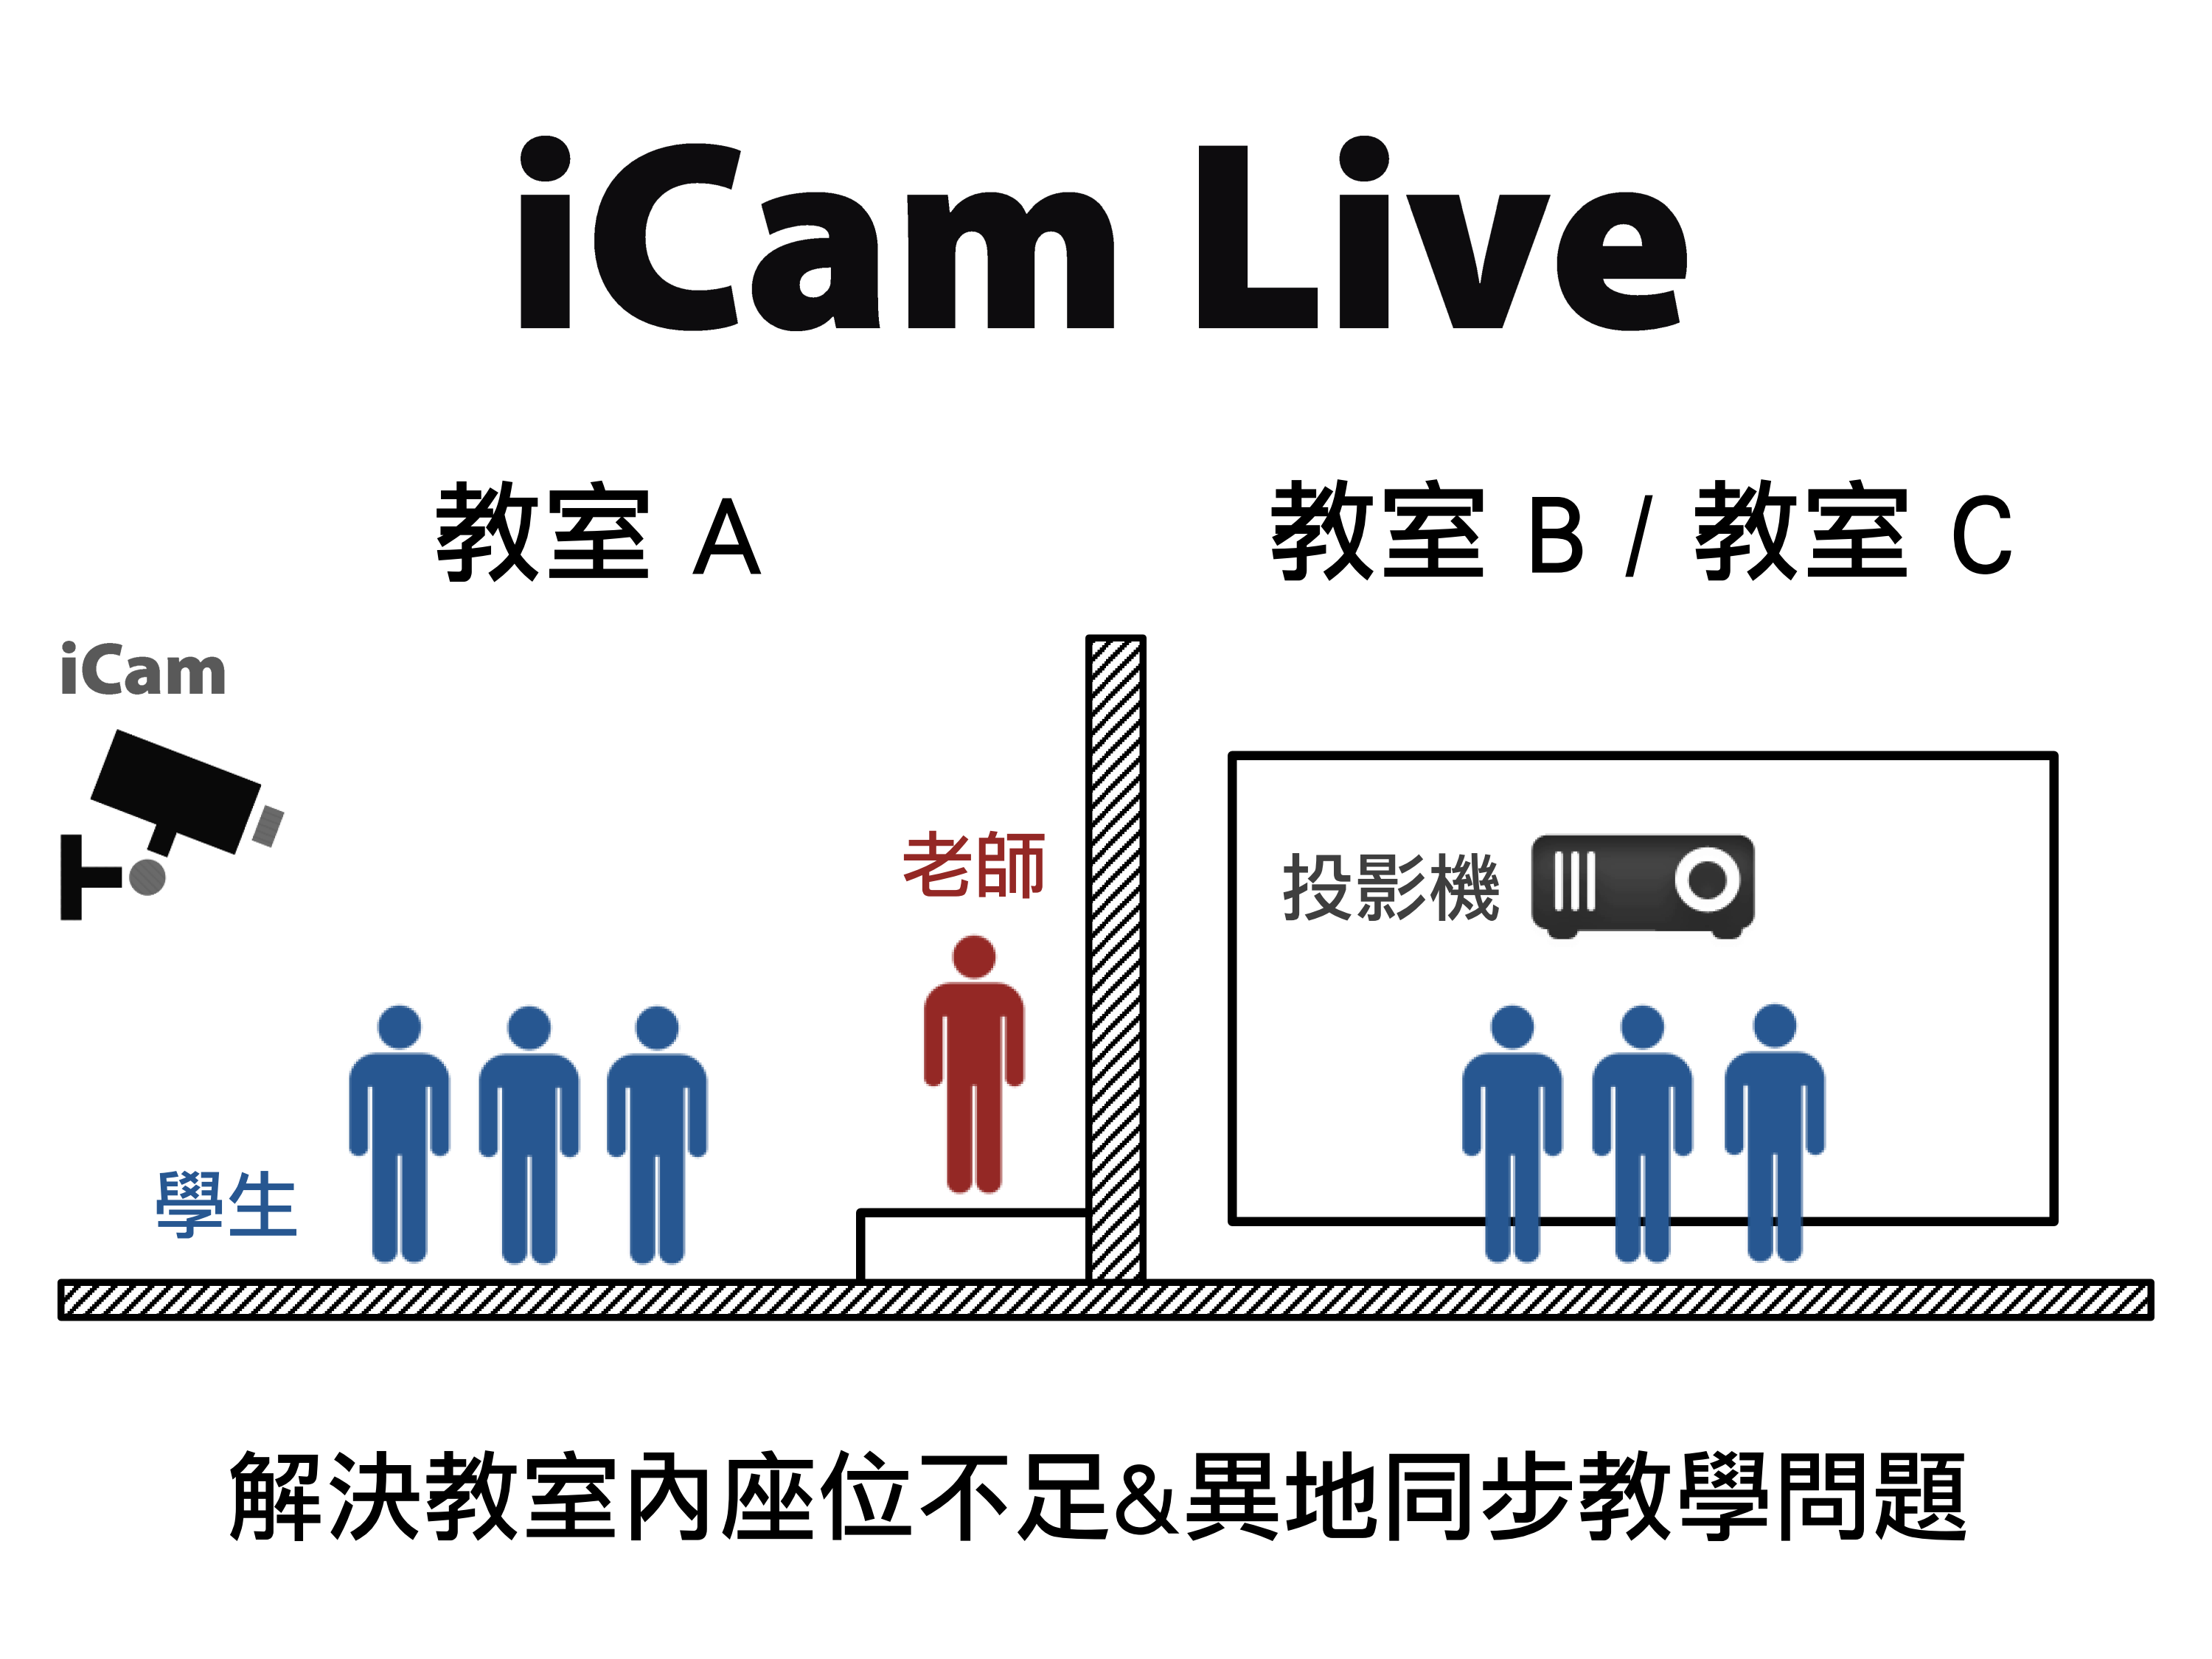 蓝眼科技提供免费的iCam Live现场直播软体给教育单位